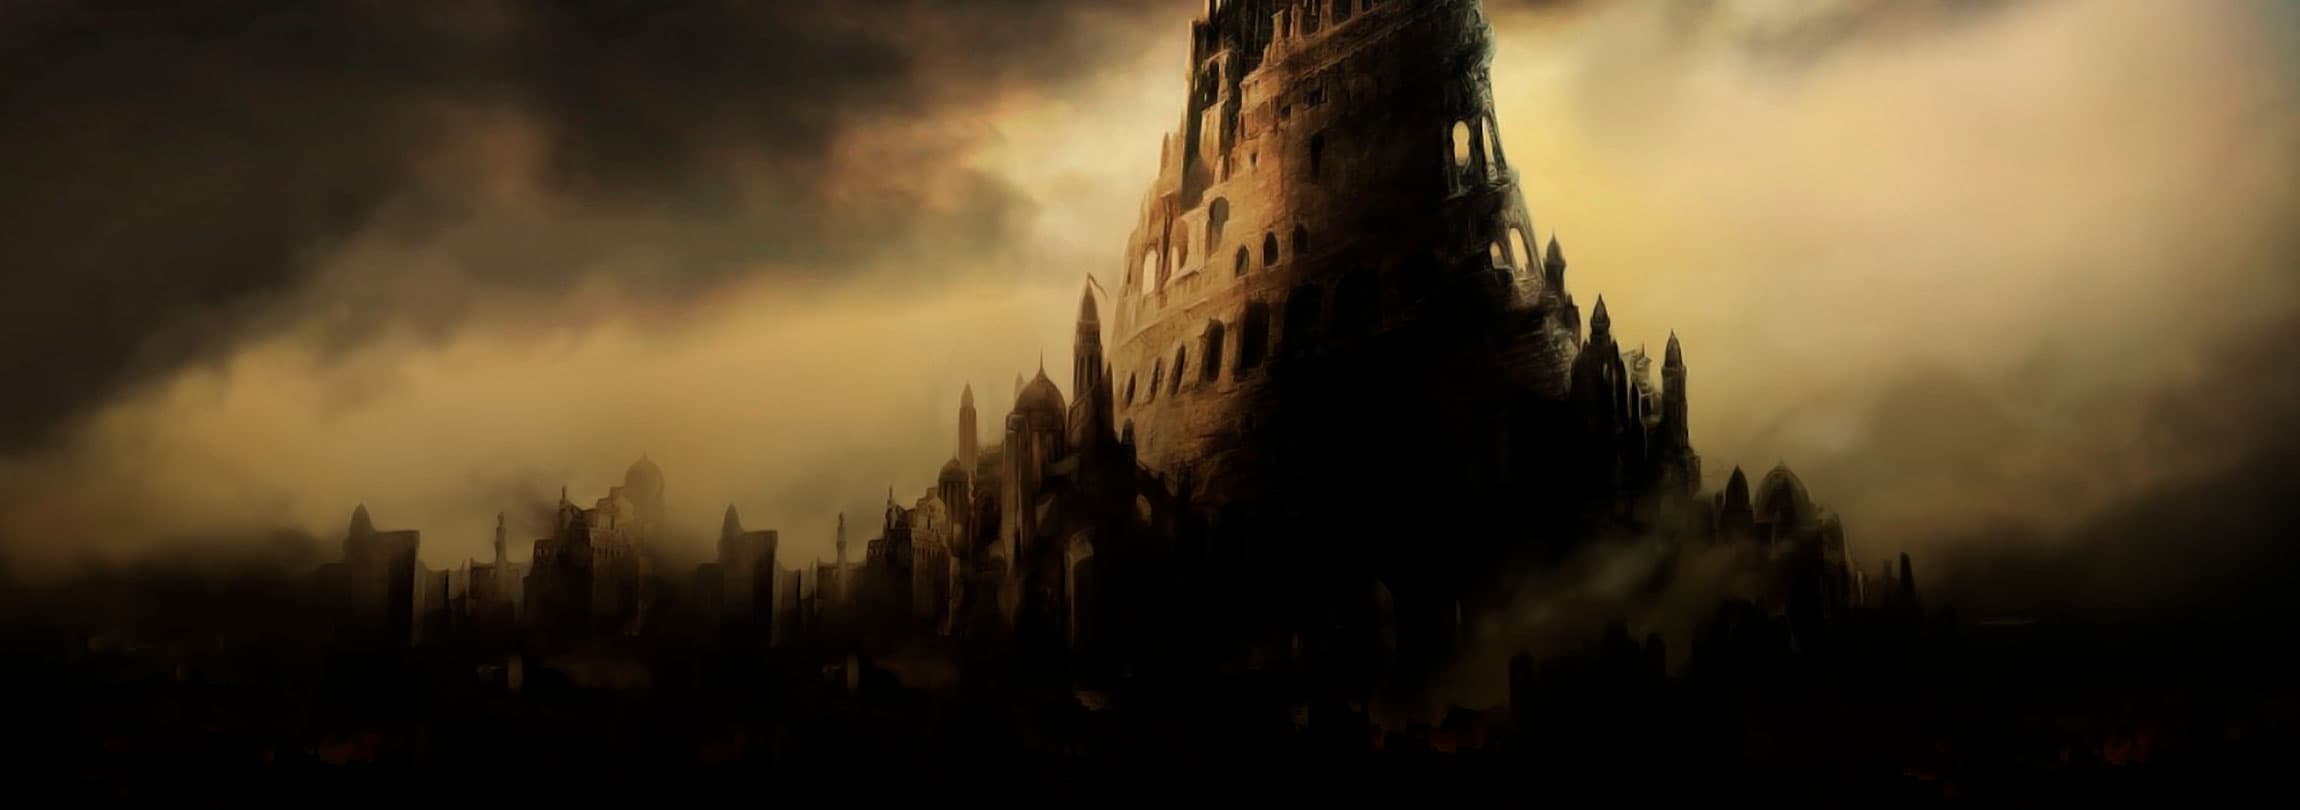 A Torre de Babel e o desejo de tomar o lugar de Deus